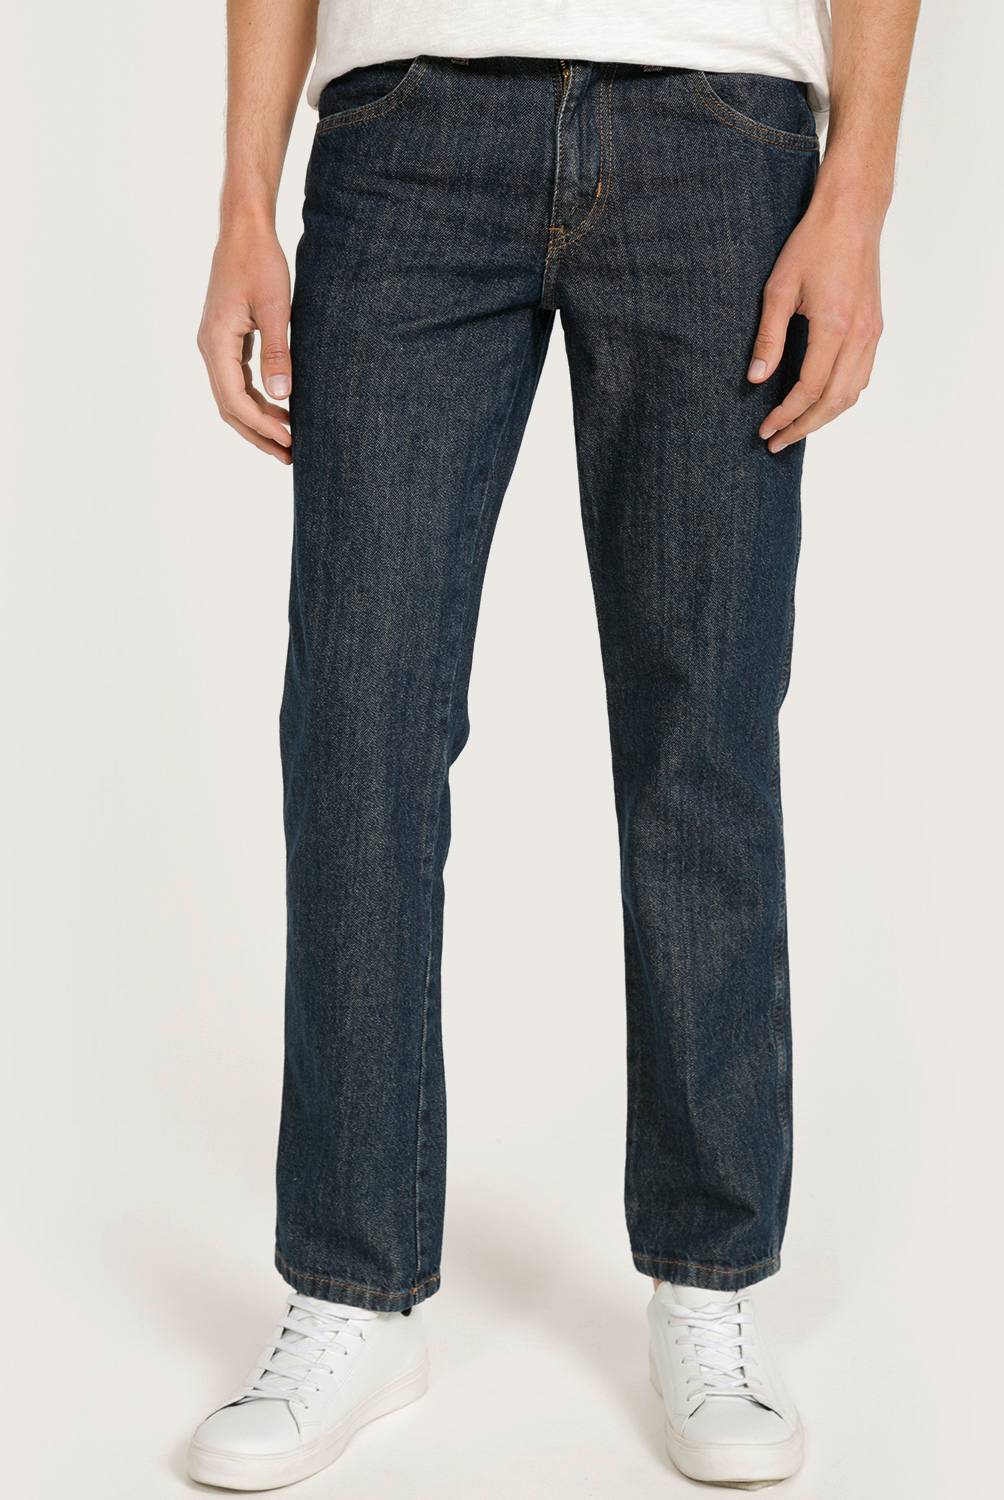 WRANGLER - Wrangler Jeans Texas Regular Fit Hombre